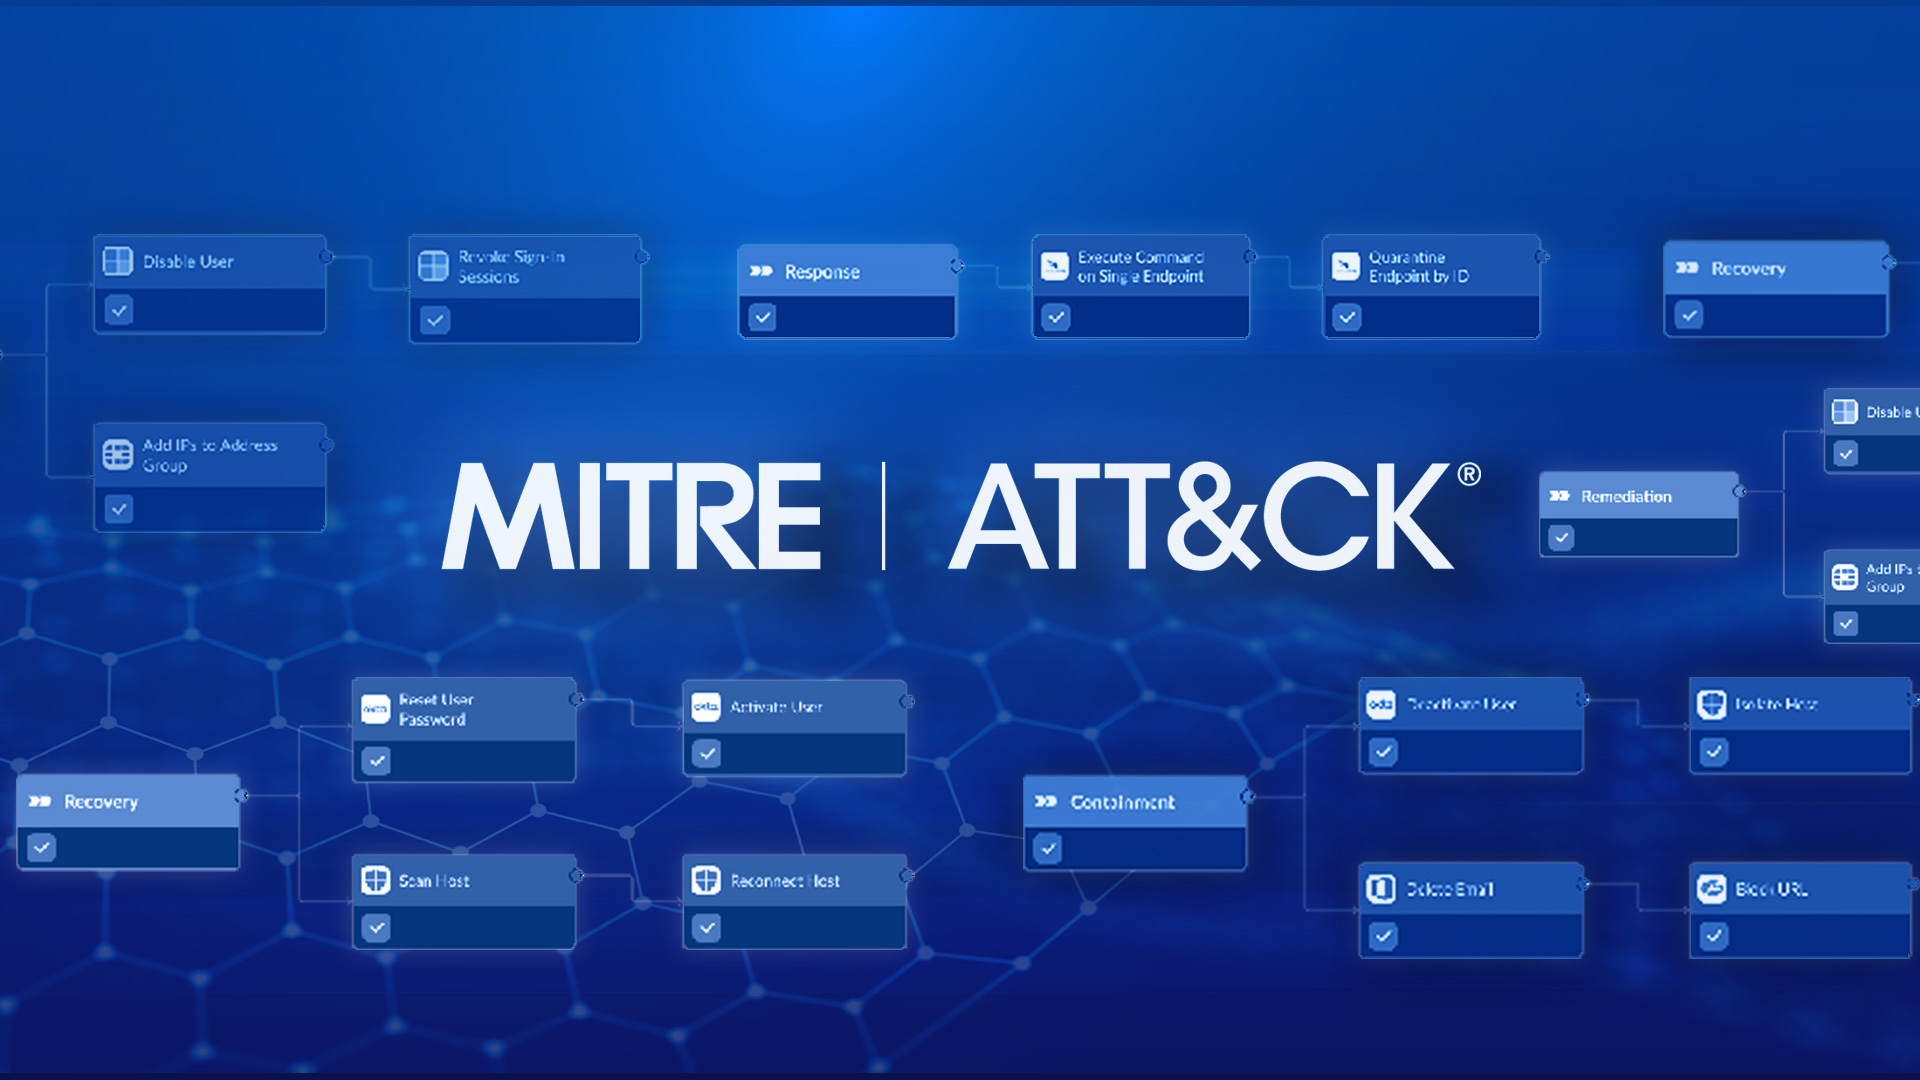 MITRE ATT&CK Technique-Driven Automation with Smart SOAR